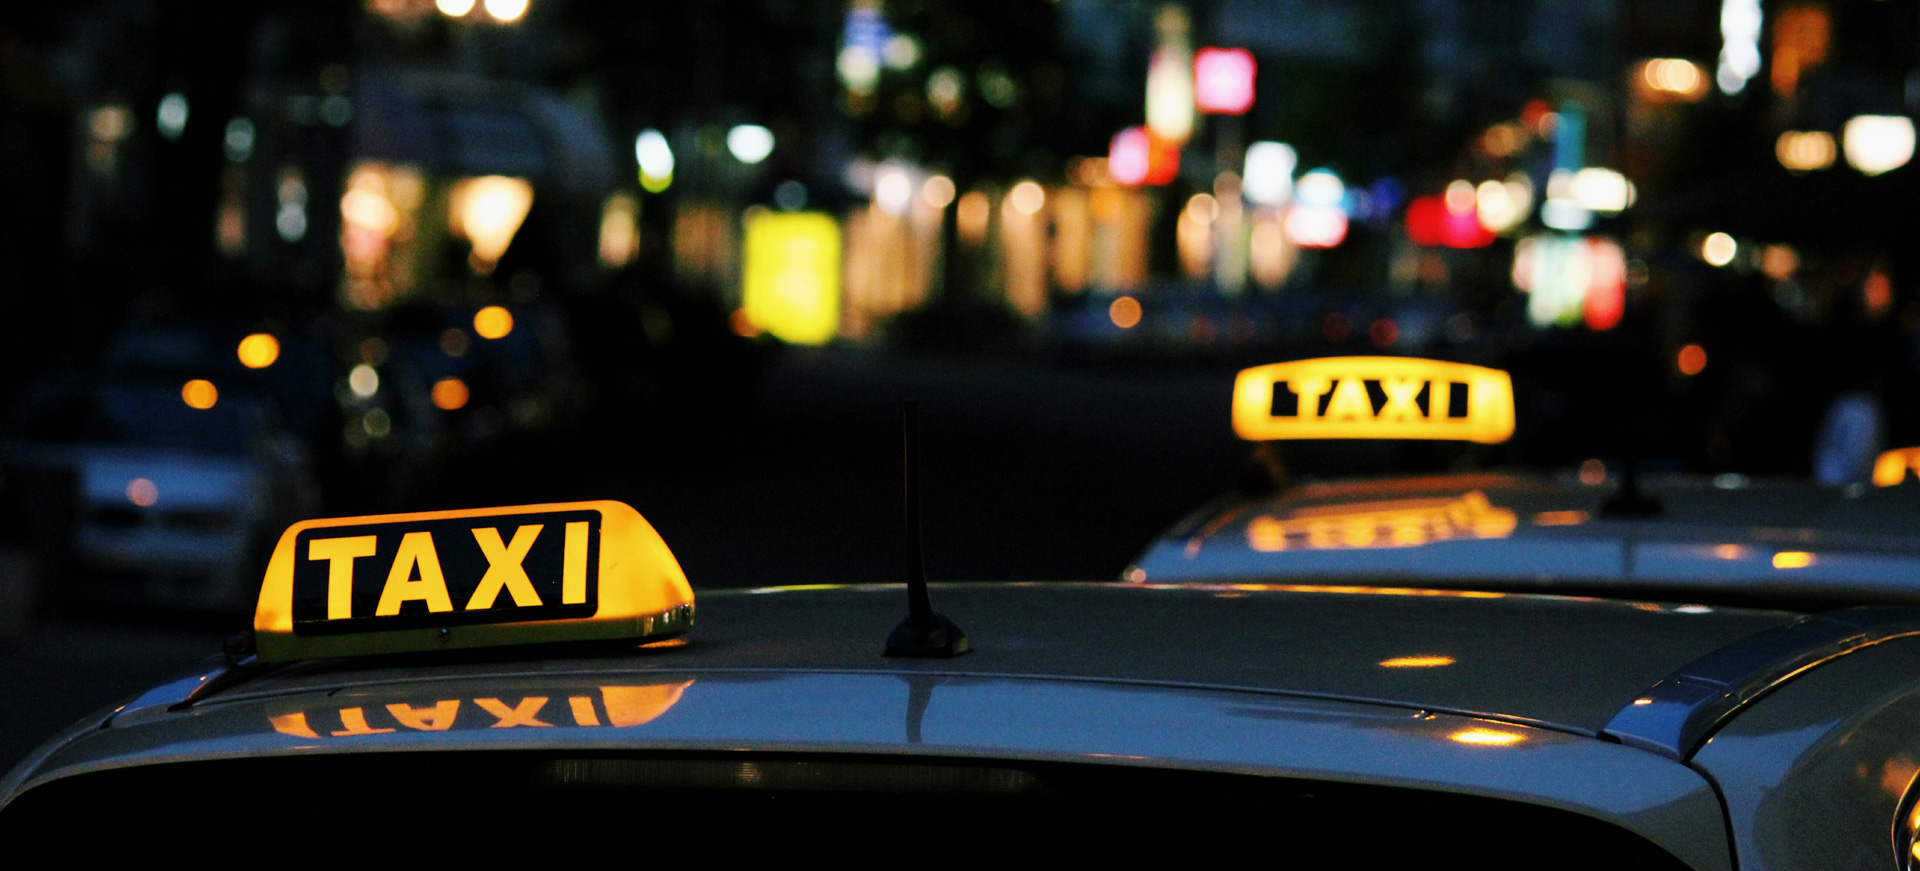 奈良県奈良市、生駒市のタクシー、タクシー送迎なら株式会社奈良中央交通へお任せください。